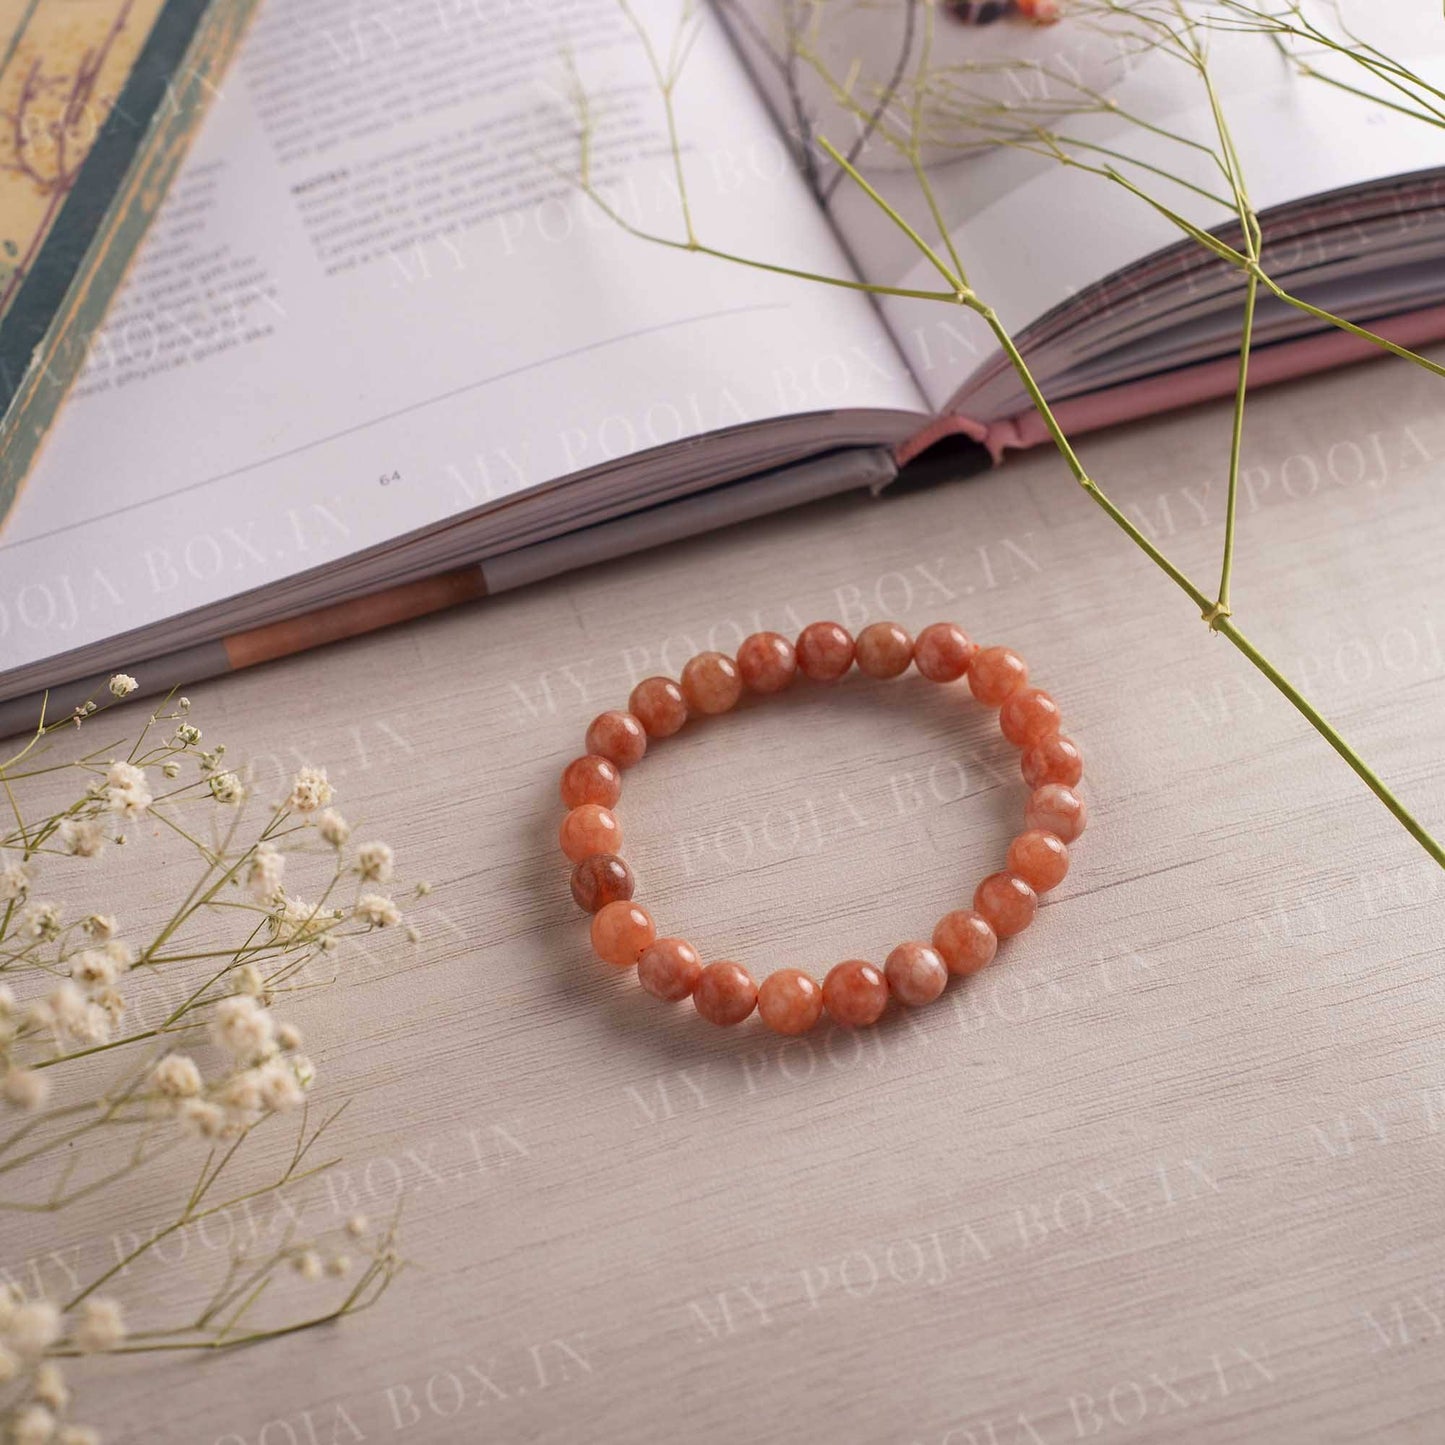 Sunstone Bracelet for Good Luck & Fortune